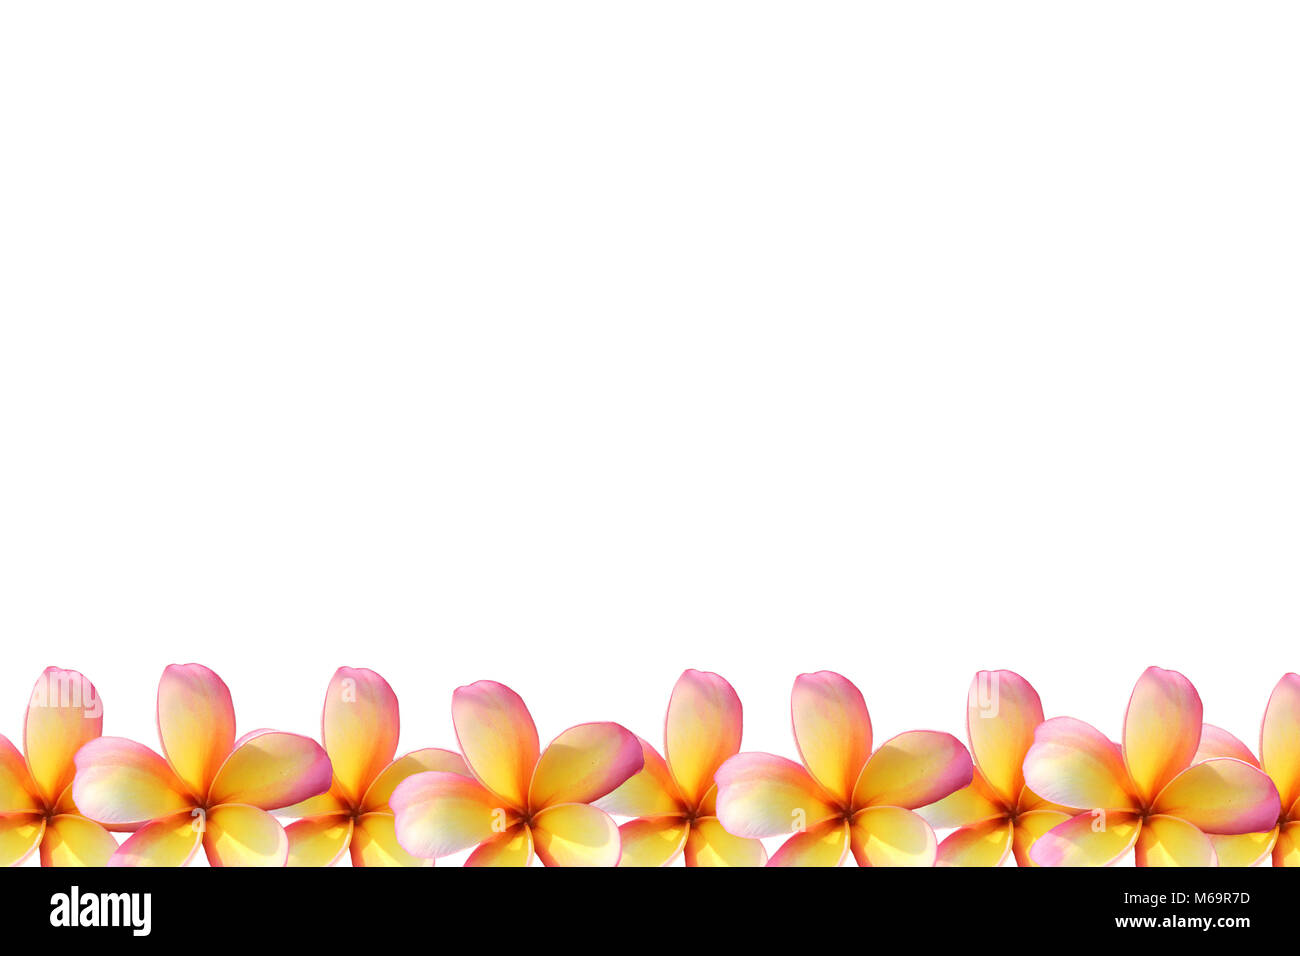 Frangipani, Plumeria flower frame on white background Stock Photo